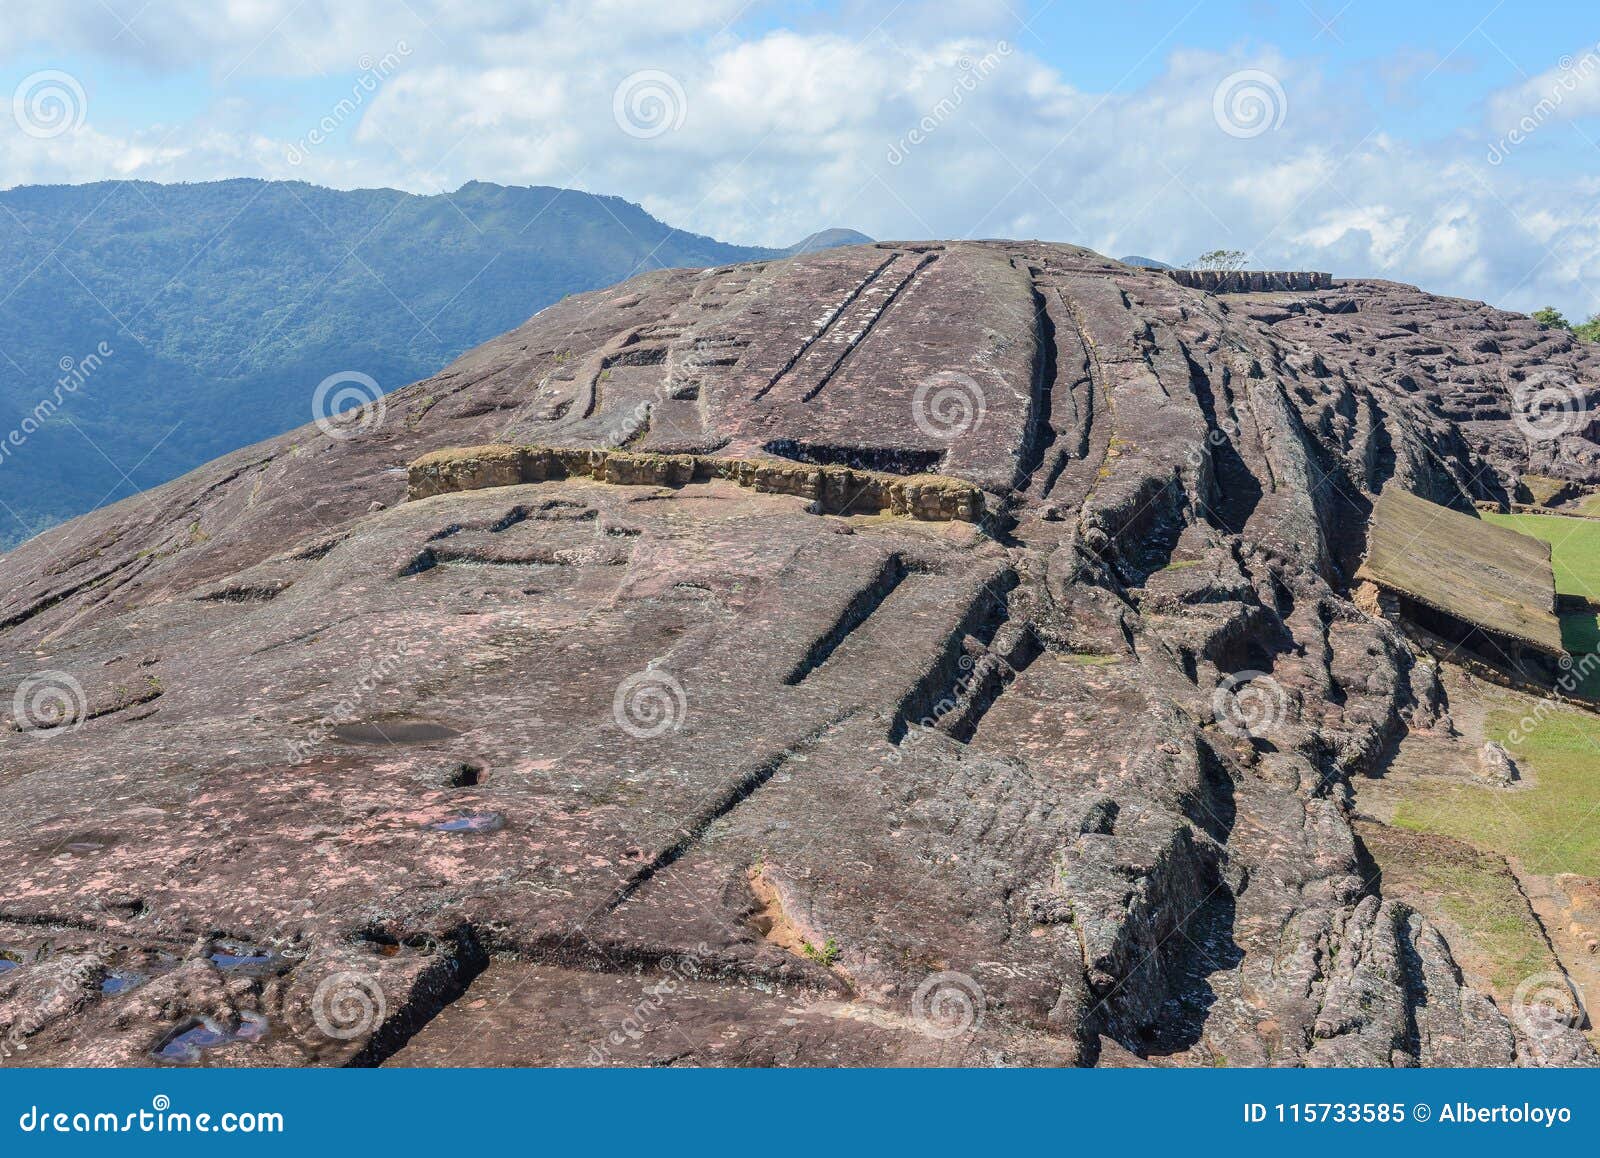 archaeological site of el fuerte de samaipata, bolivia